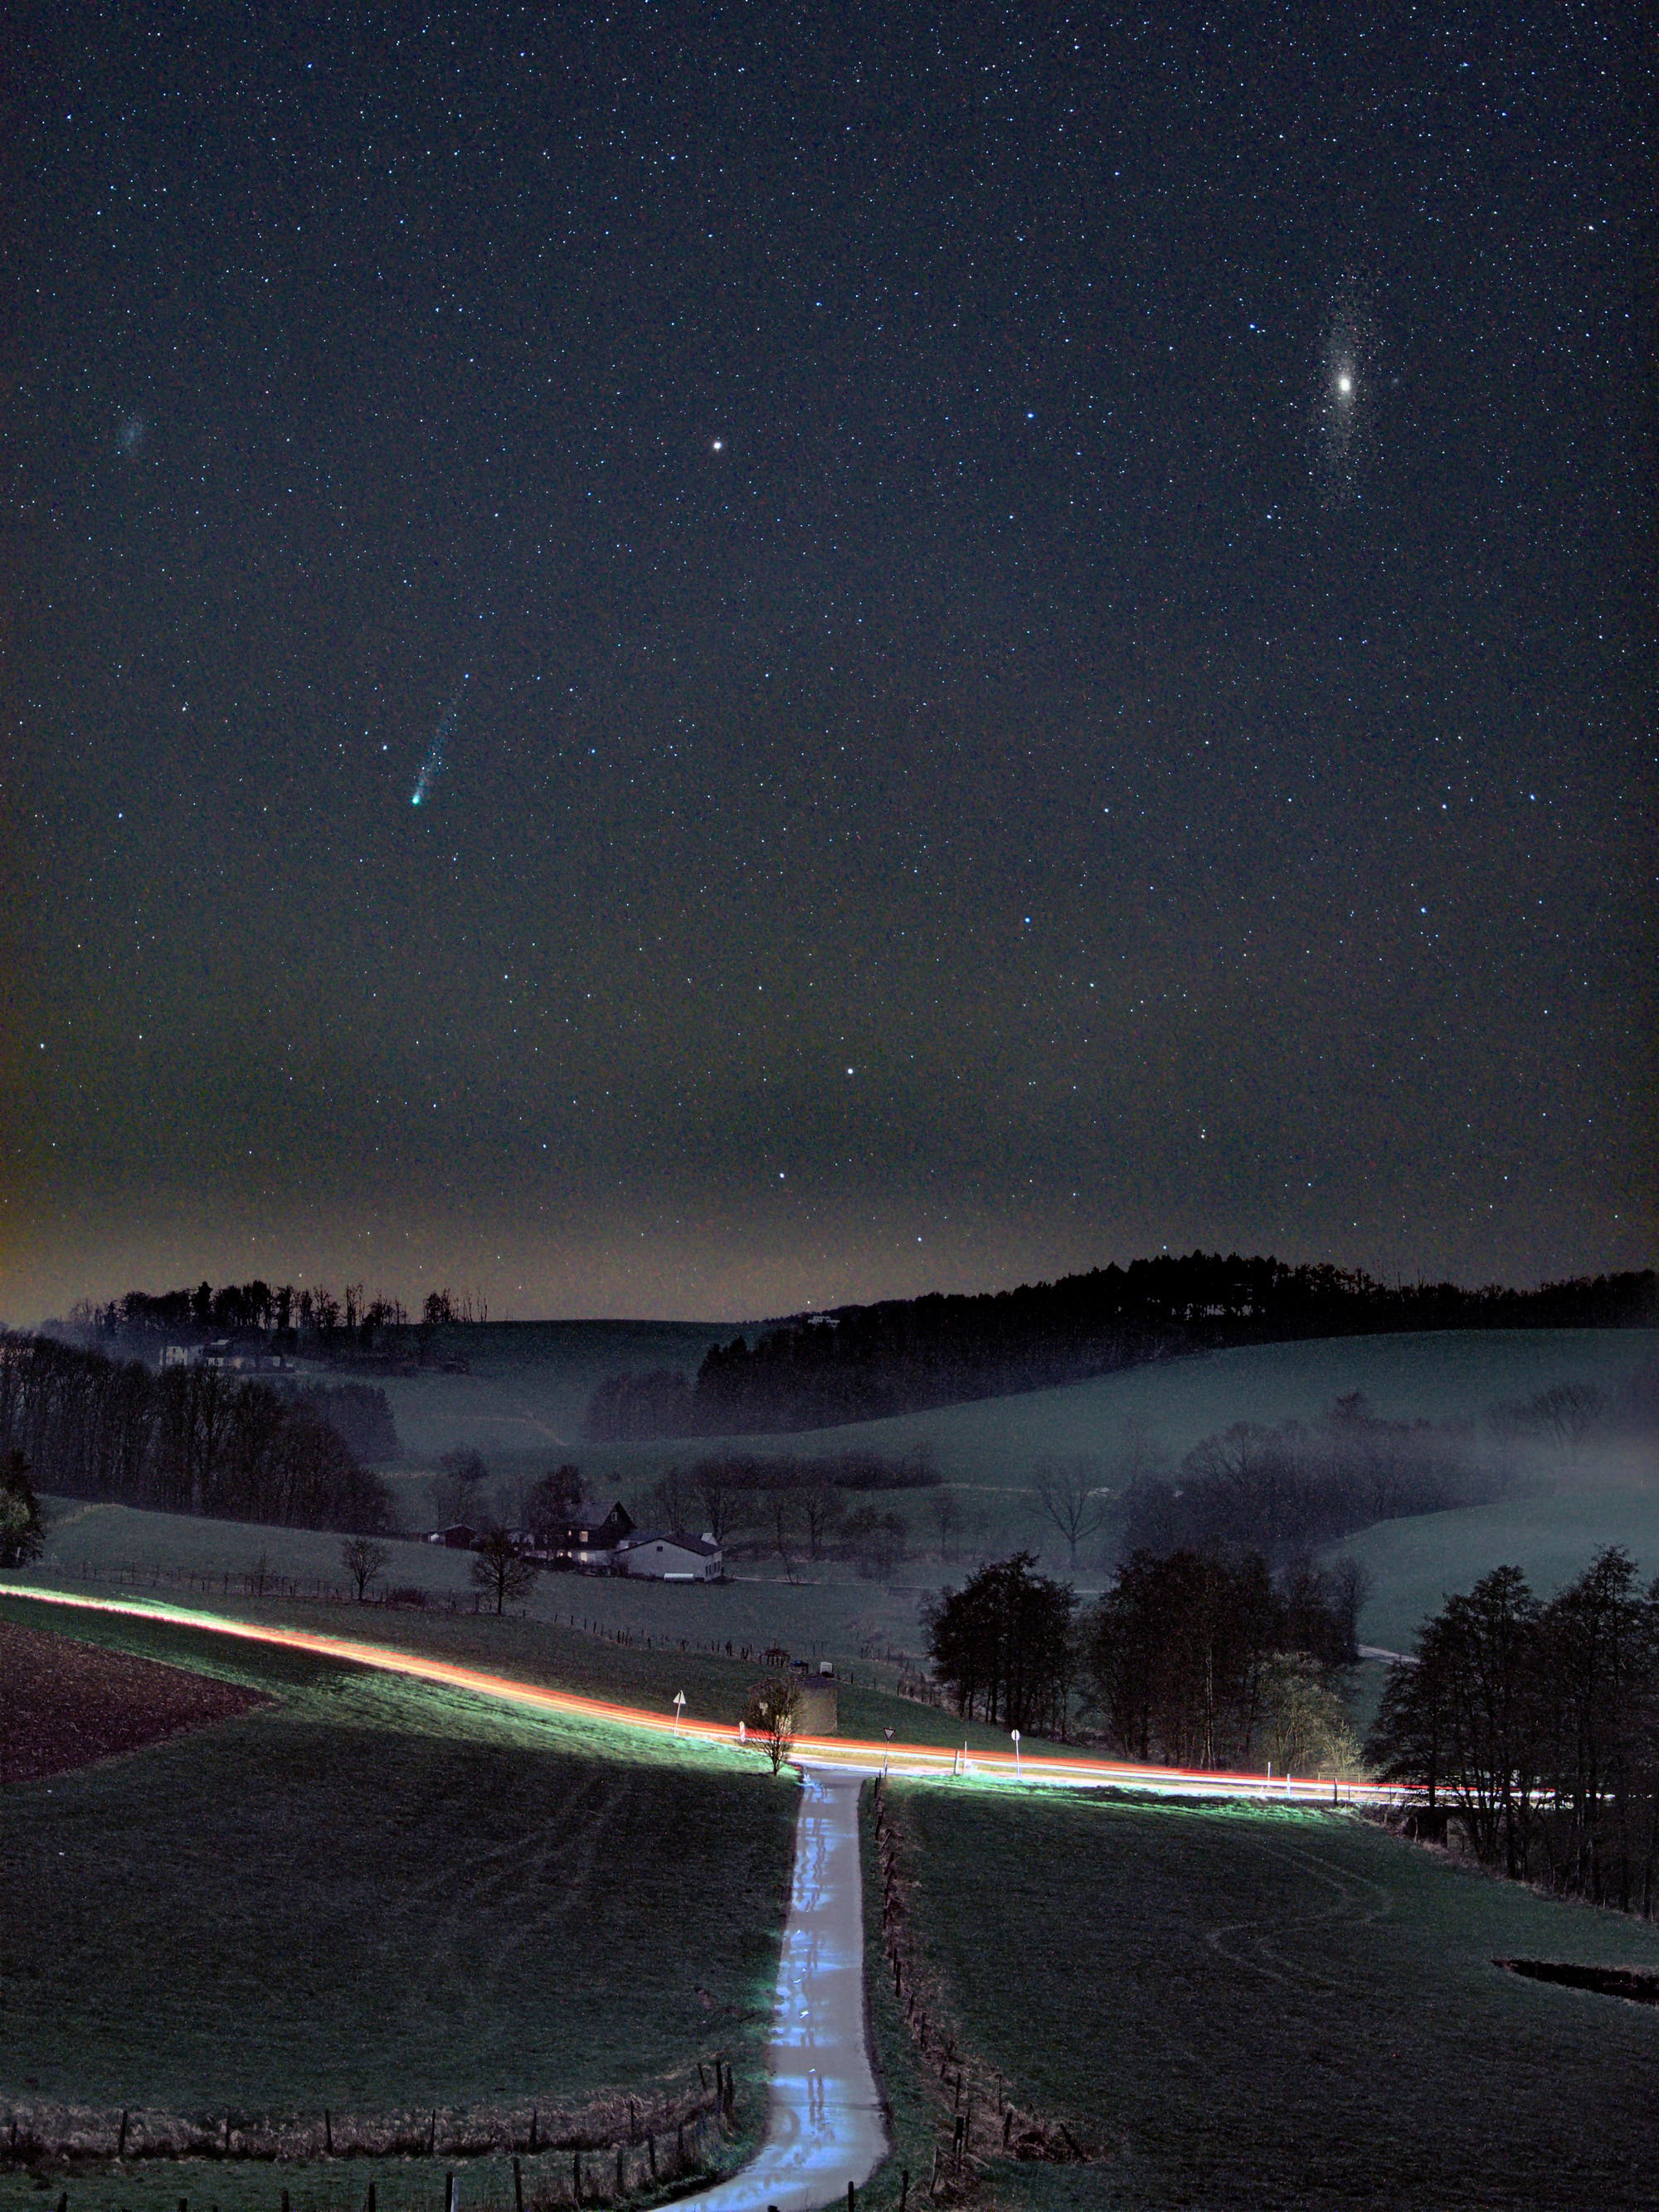 Komet zwischen den Galaxien in der Nightscape-Fotografie 